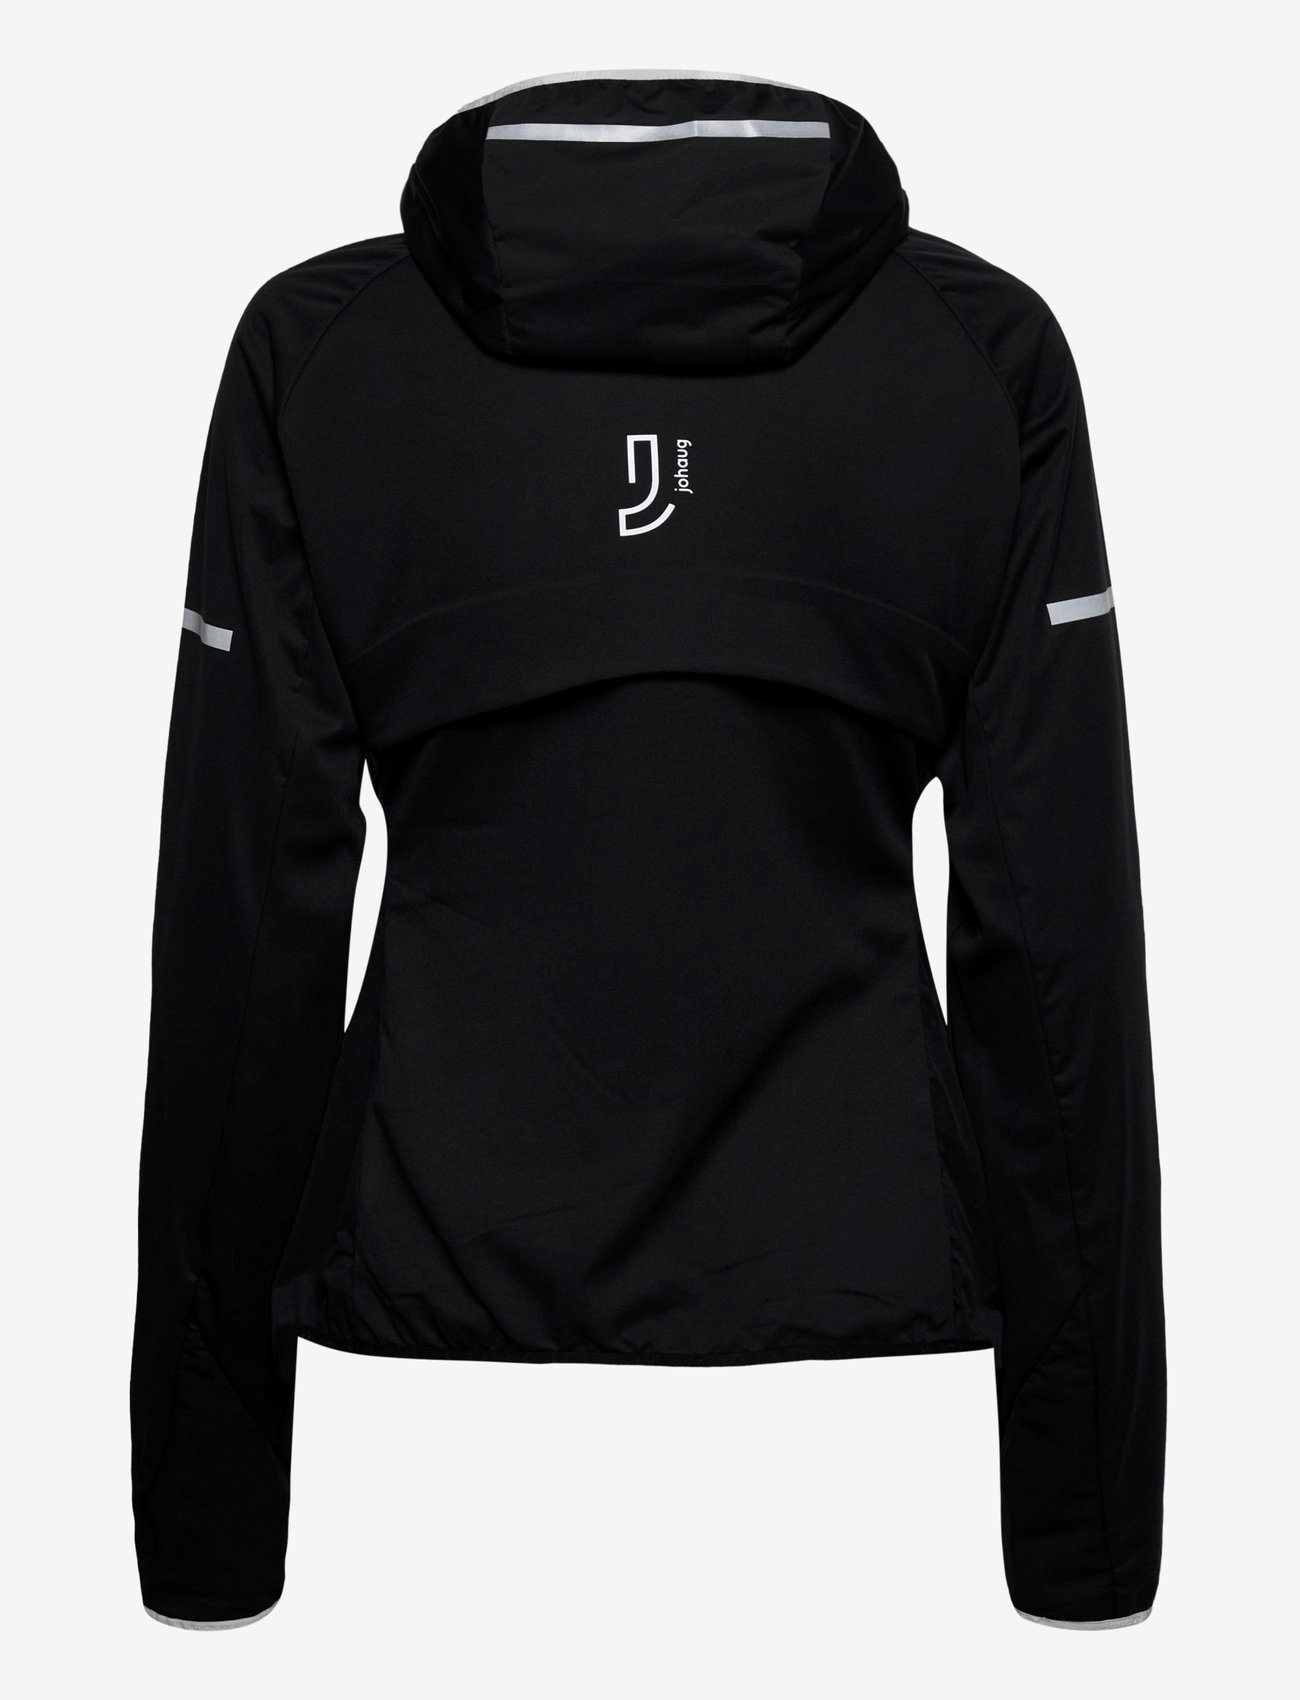 Johaug - Concept Jacket - wandel- en regenjassen - tblck - 1